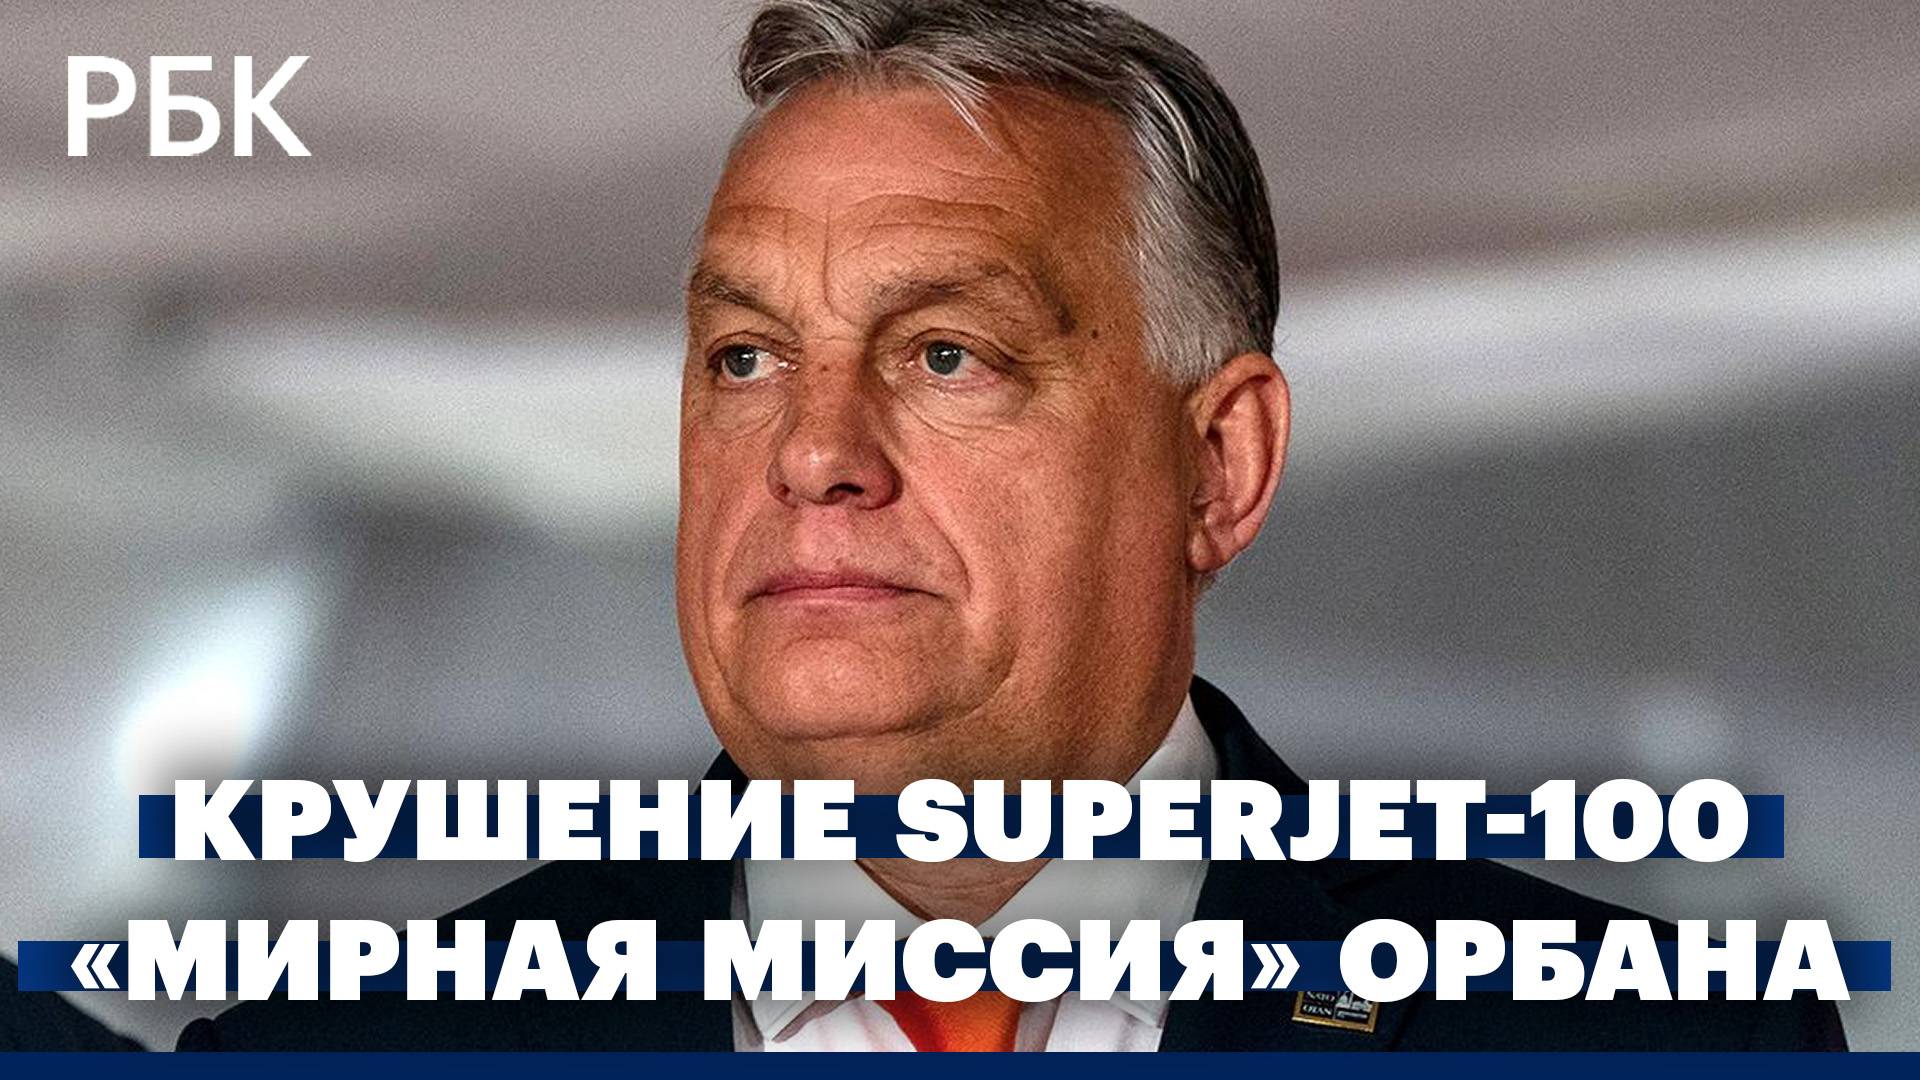 Расследование крушения Superjet-100. Итоги «мирной миссии» Виктора Орбана